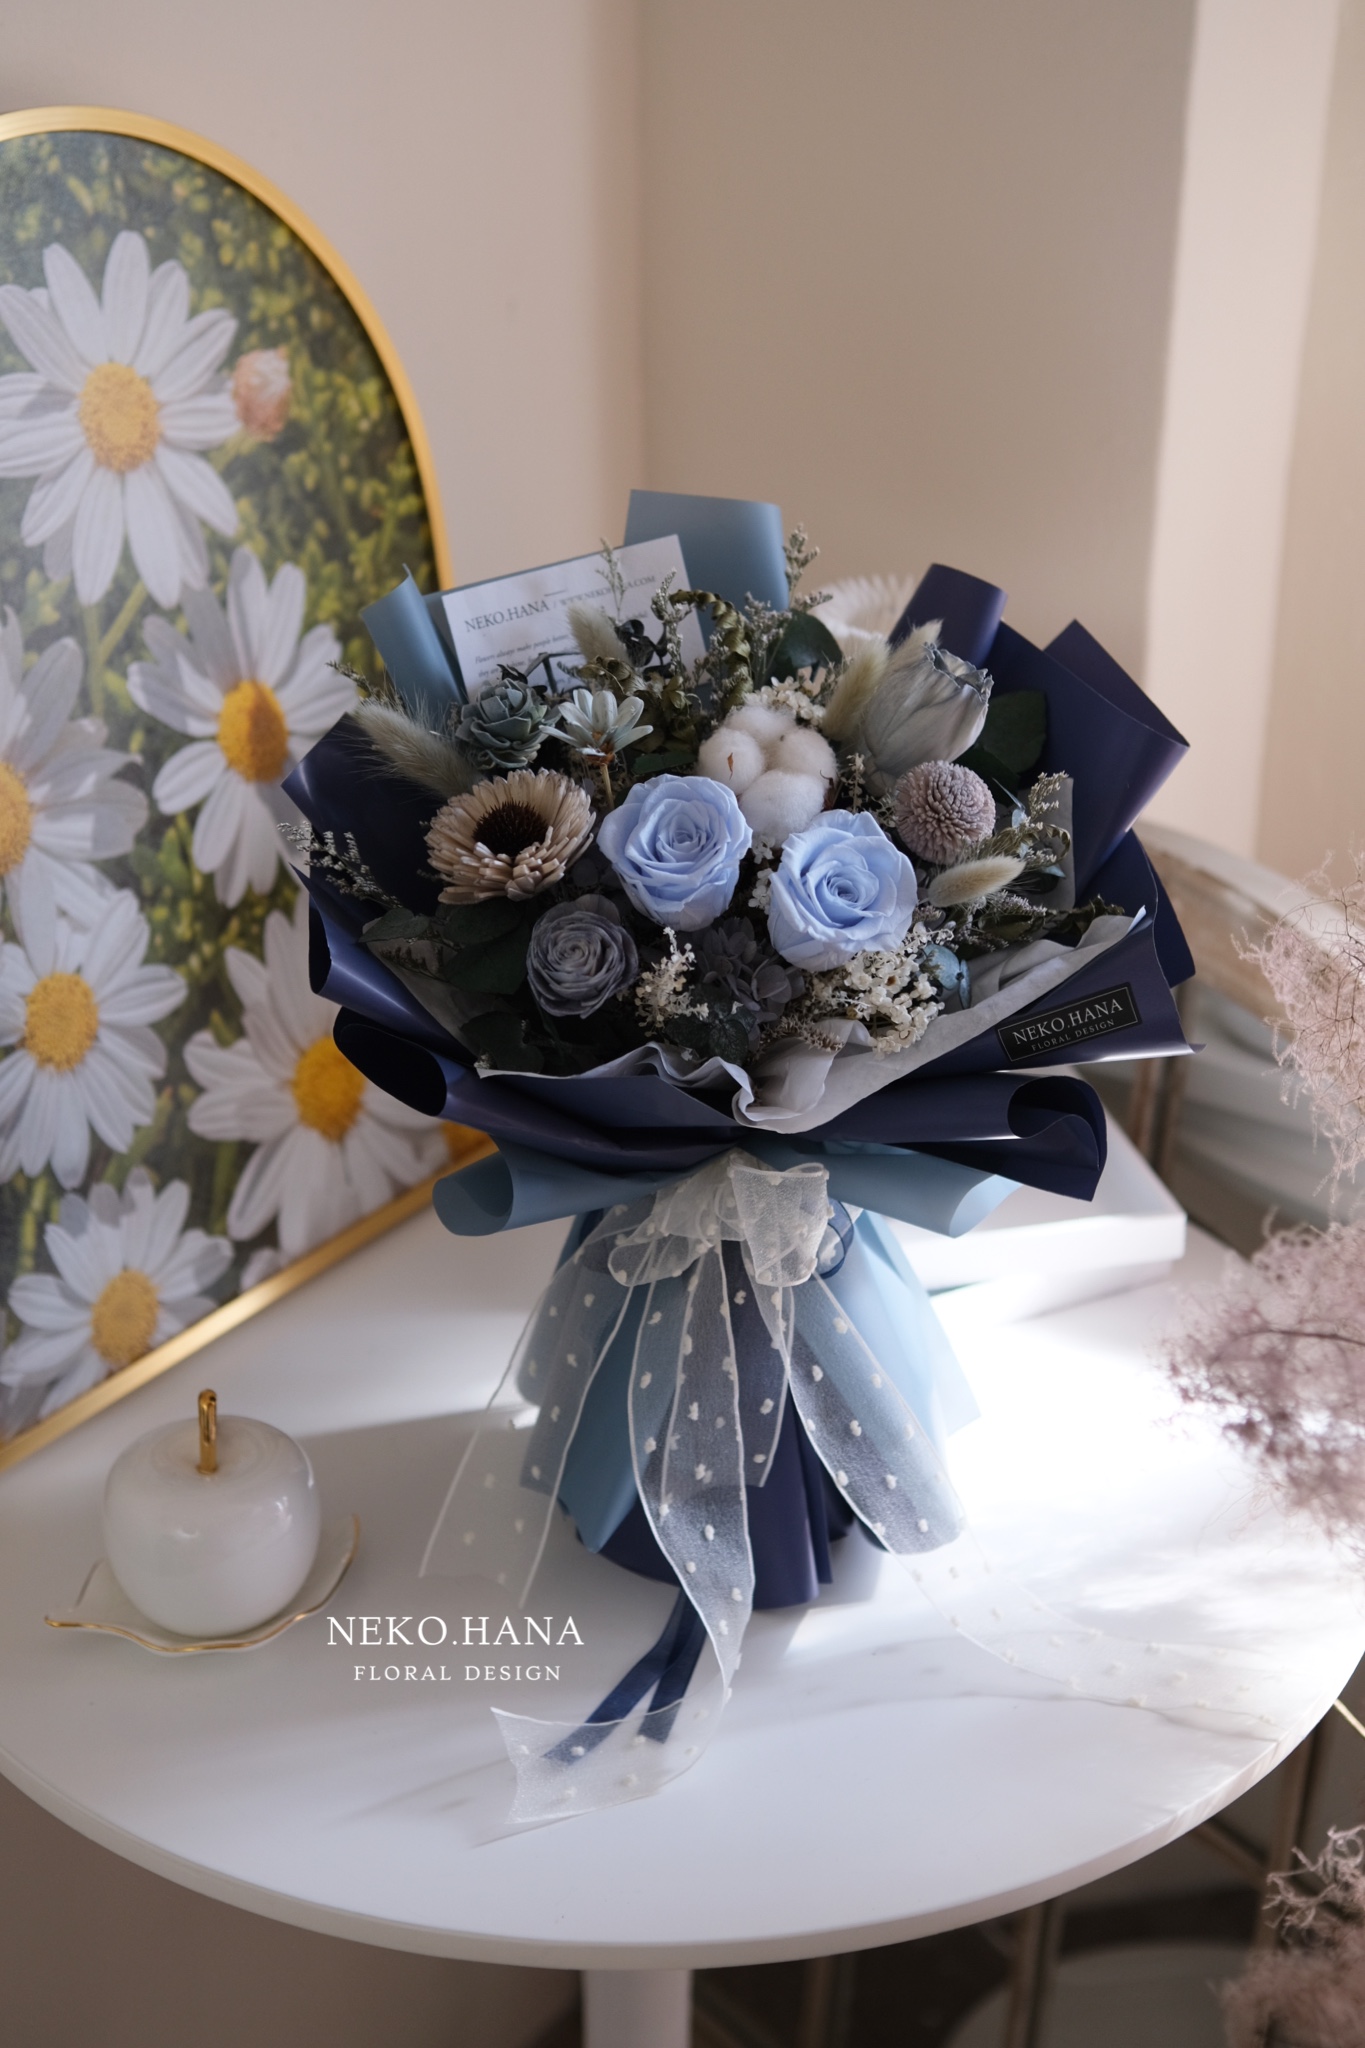 水藍色永生花束 中款 乾燥花 永生花束 乾燥 永生花禮系列 Neko Hana Florist